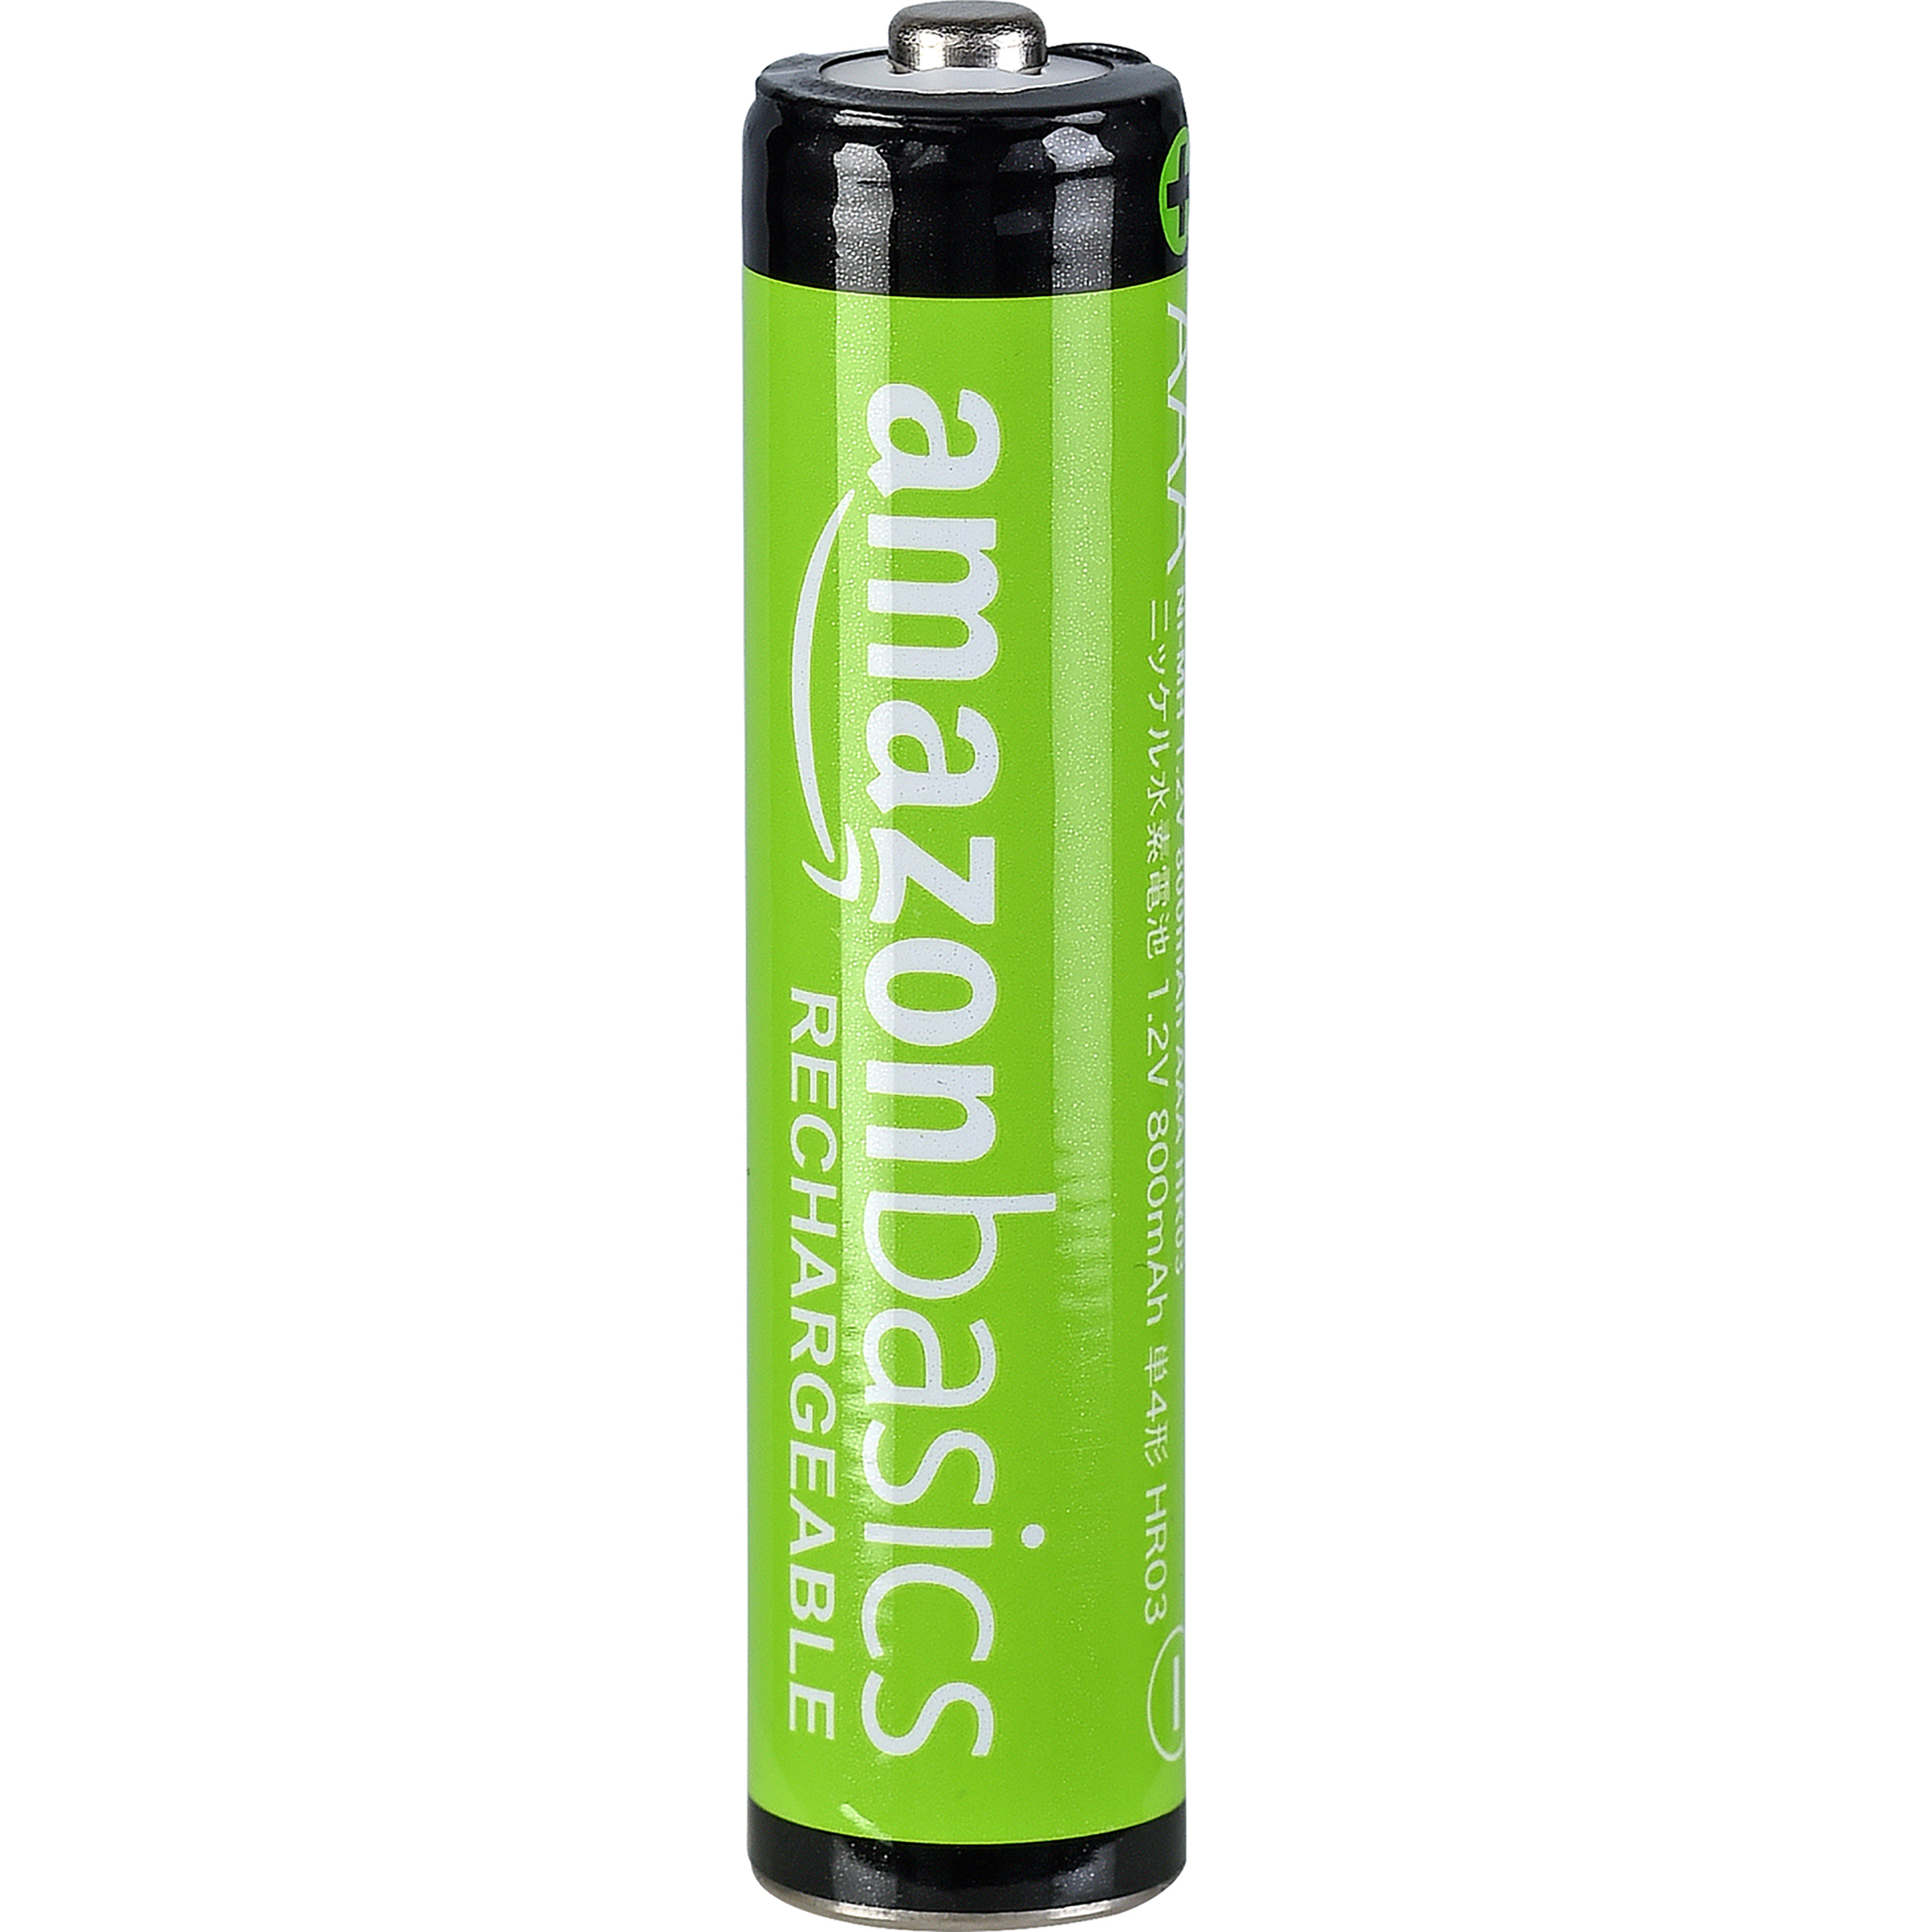 Amazon Basics AAA Rechargeable Batterie -  